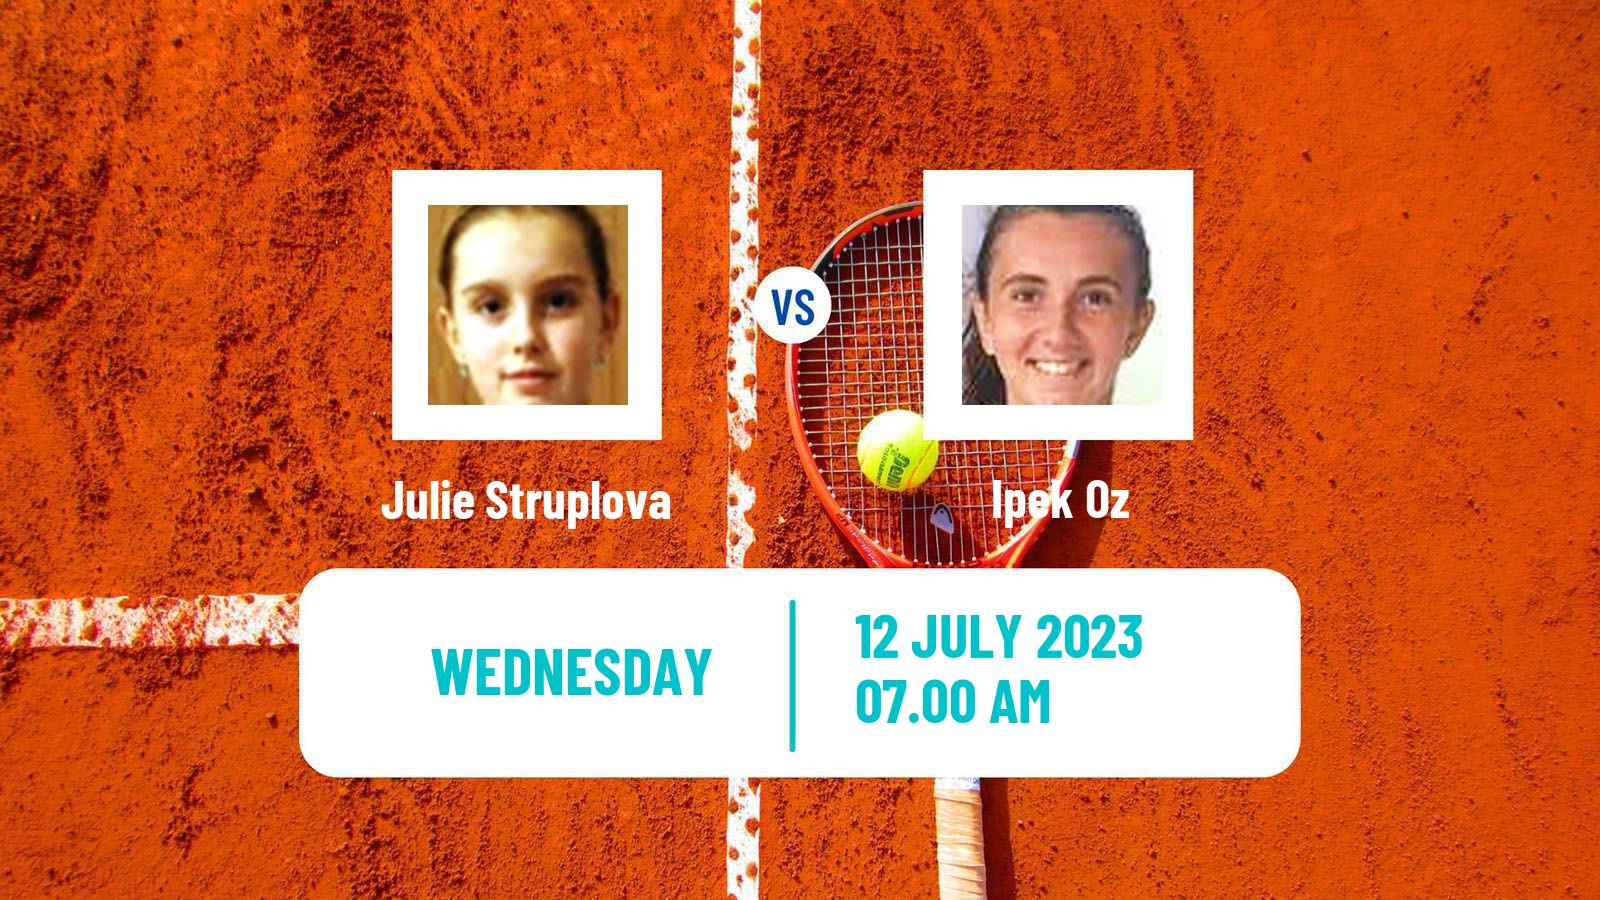 Tennis ITF W25 Aschaffenburg Women Julie Struplova - Ipek Oz